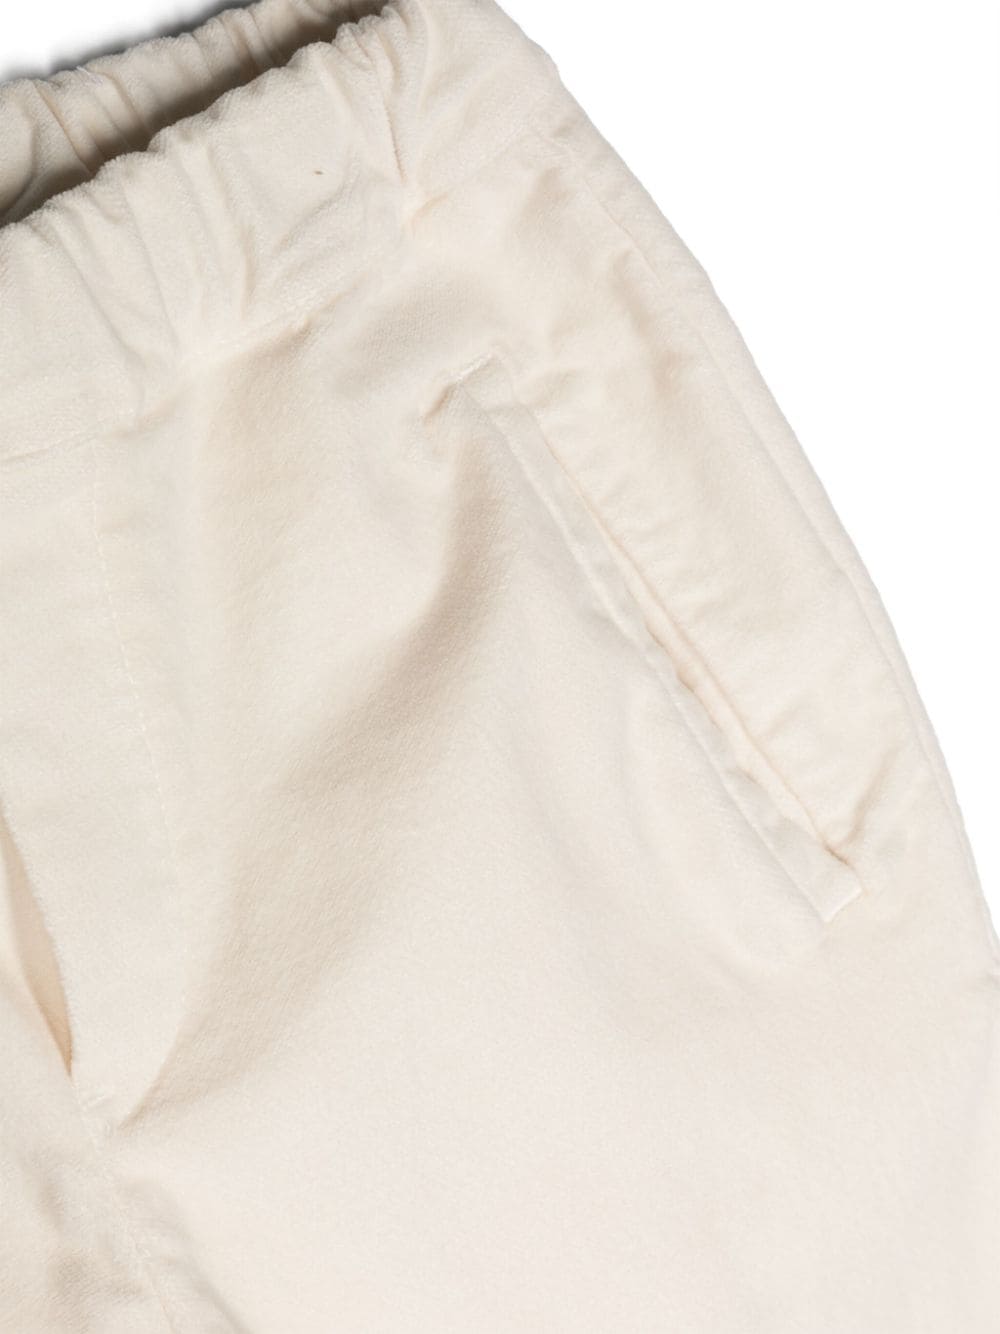 Pantaloni bianco crema bambino